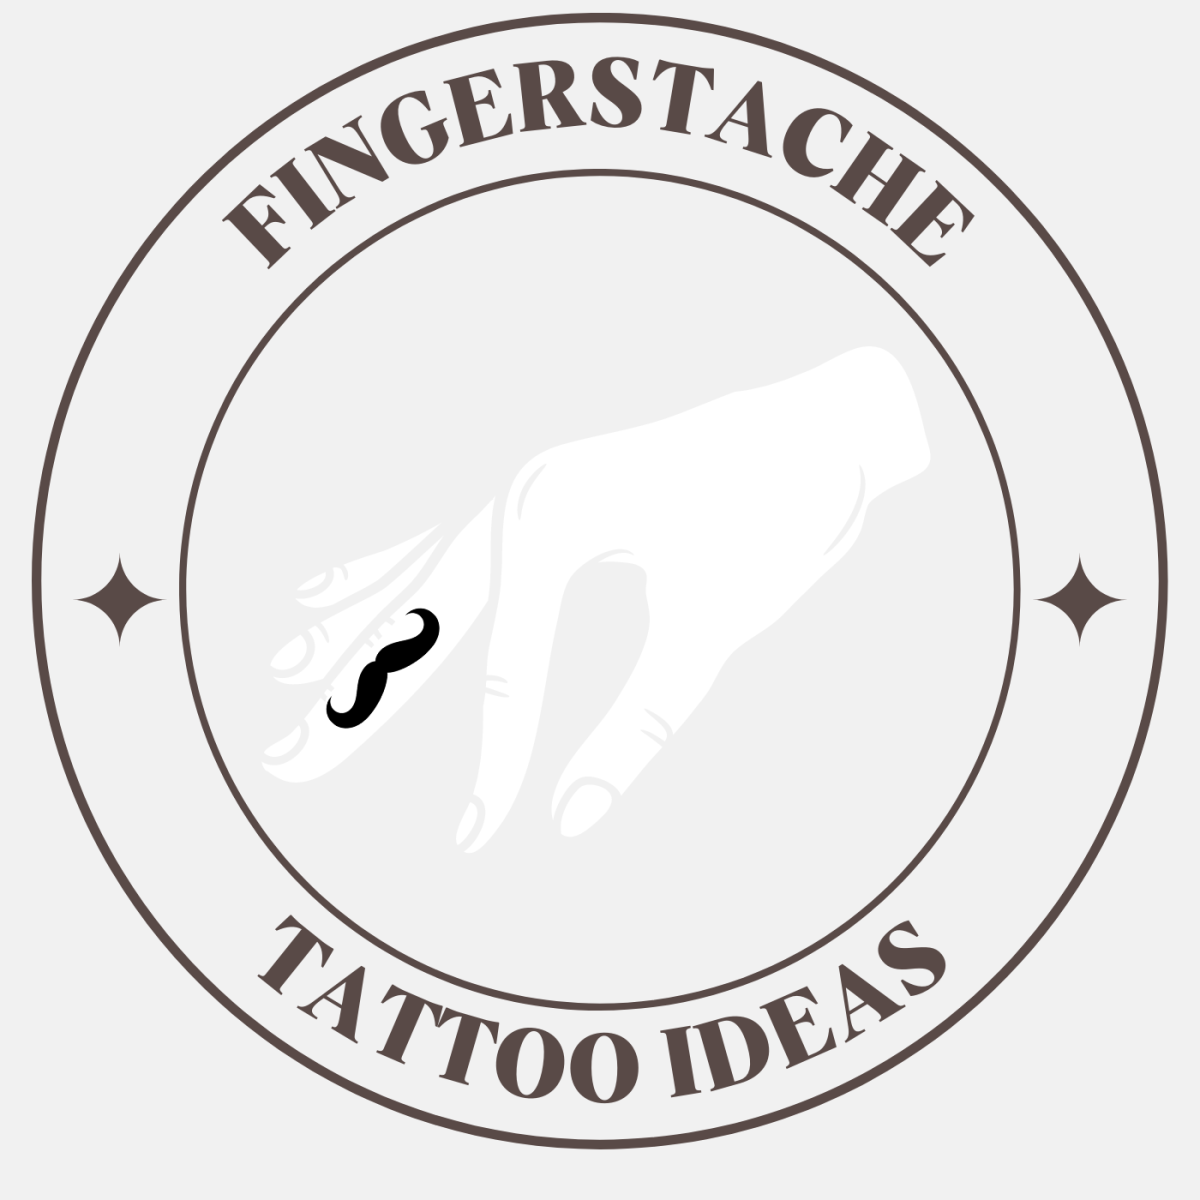 Stachetats Regular Disco Mustache Tattoos — Shimmer & Confetti